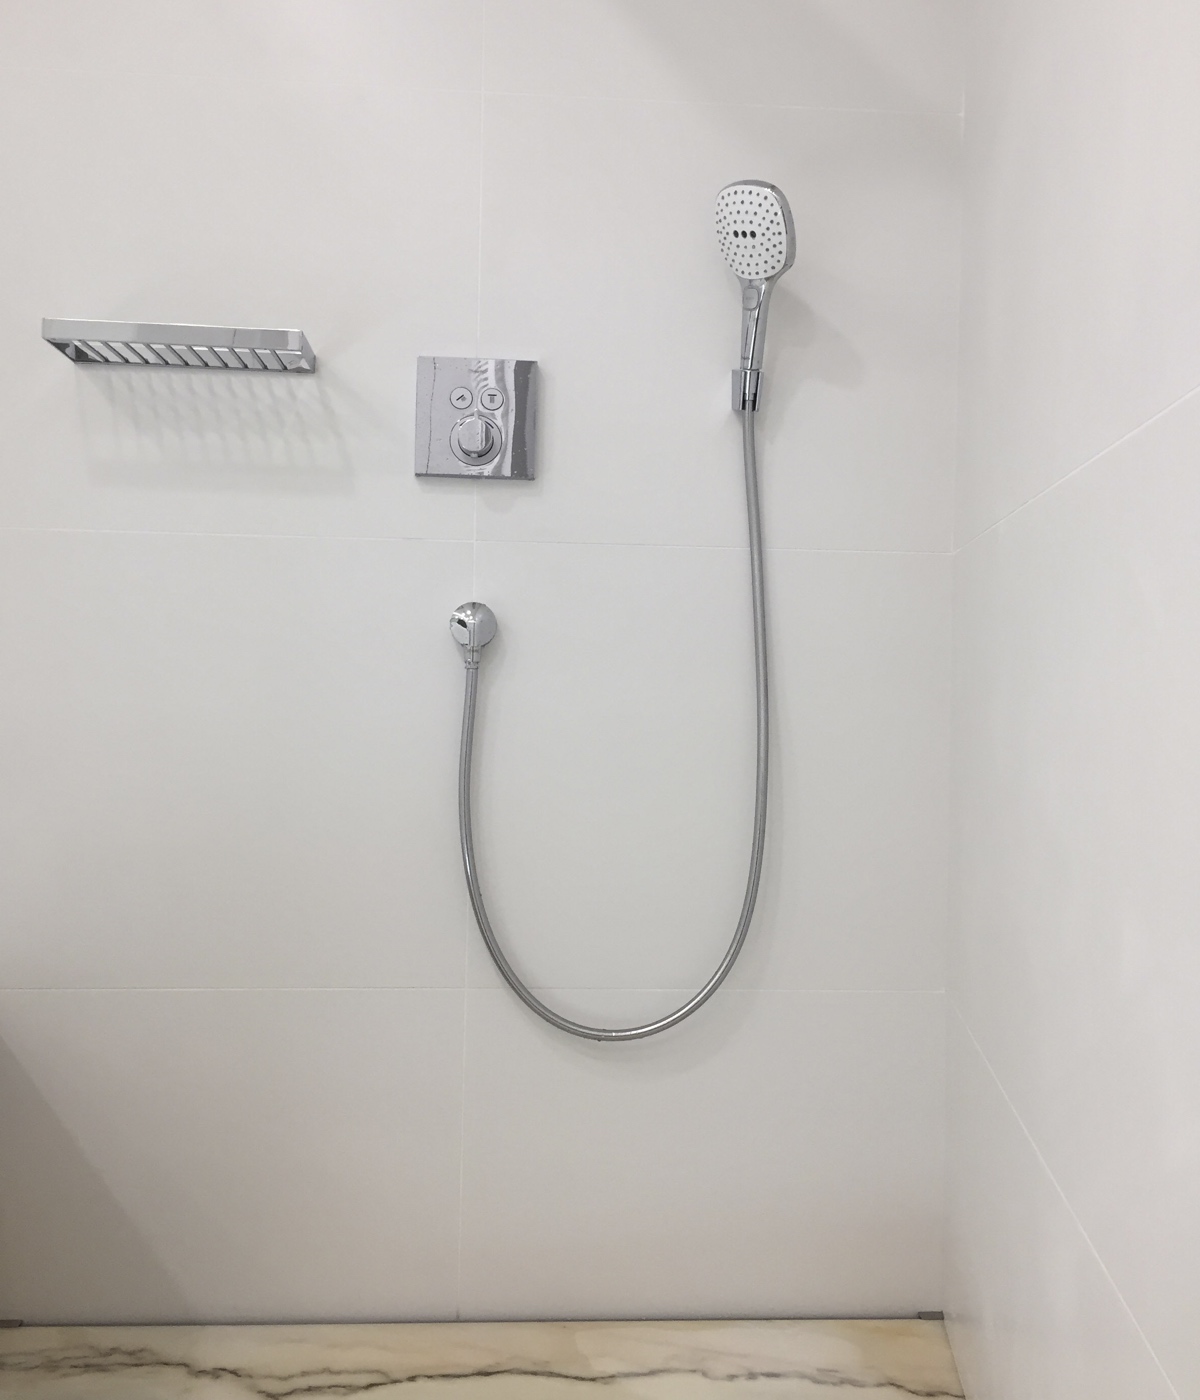 современный дизайн ванной